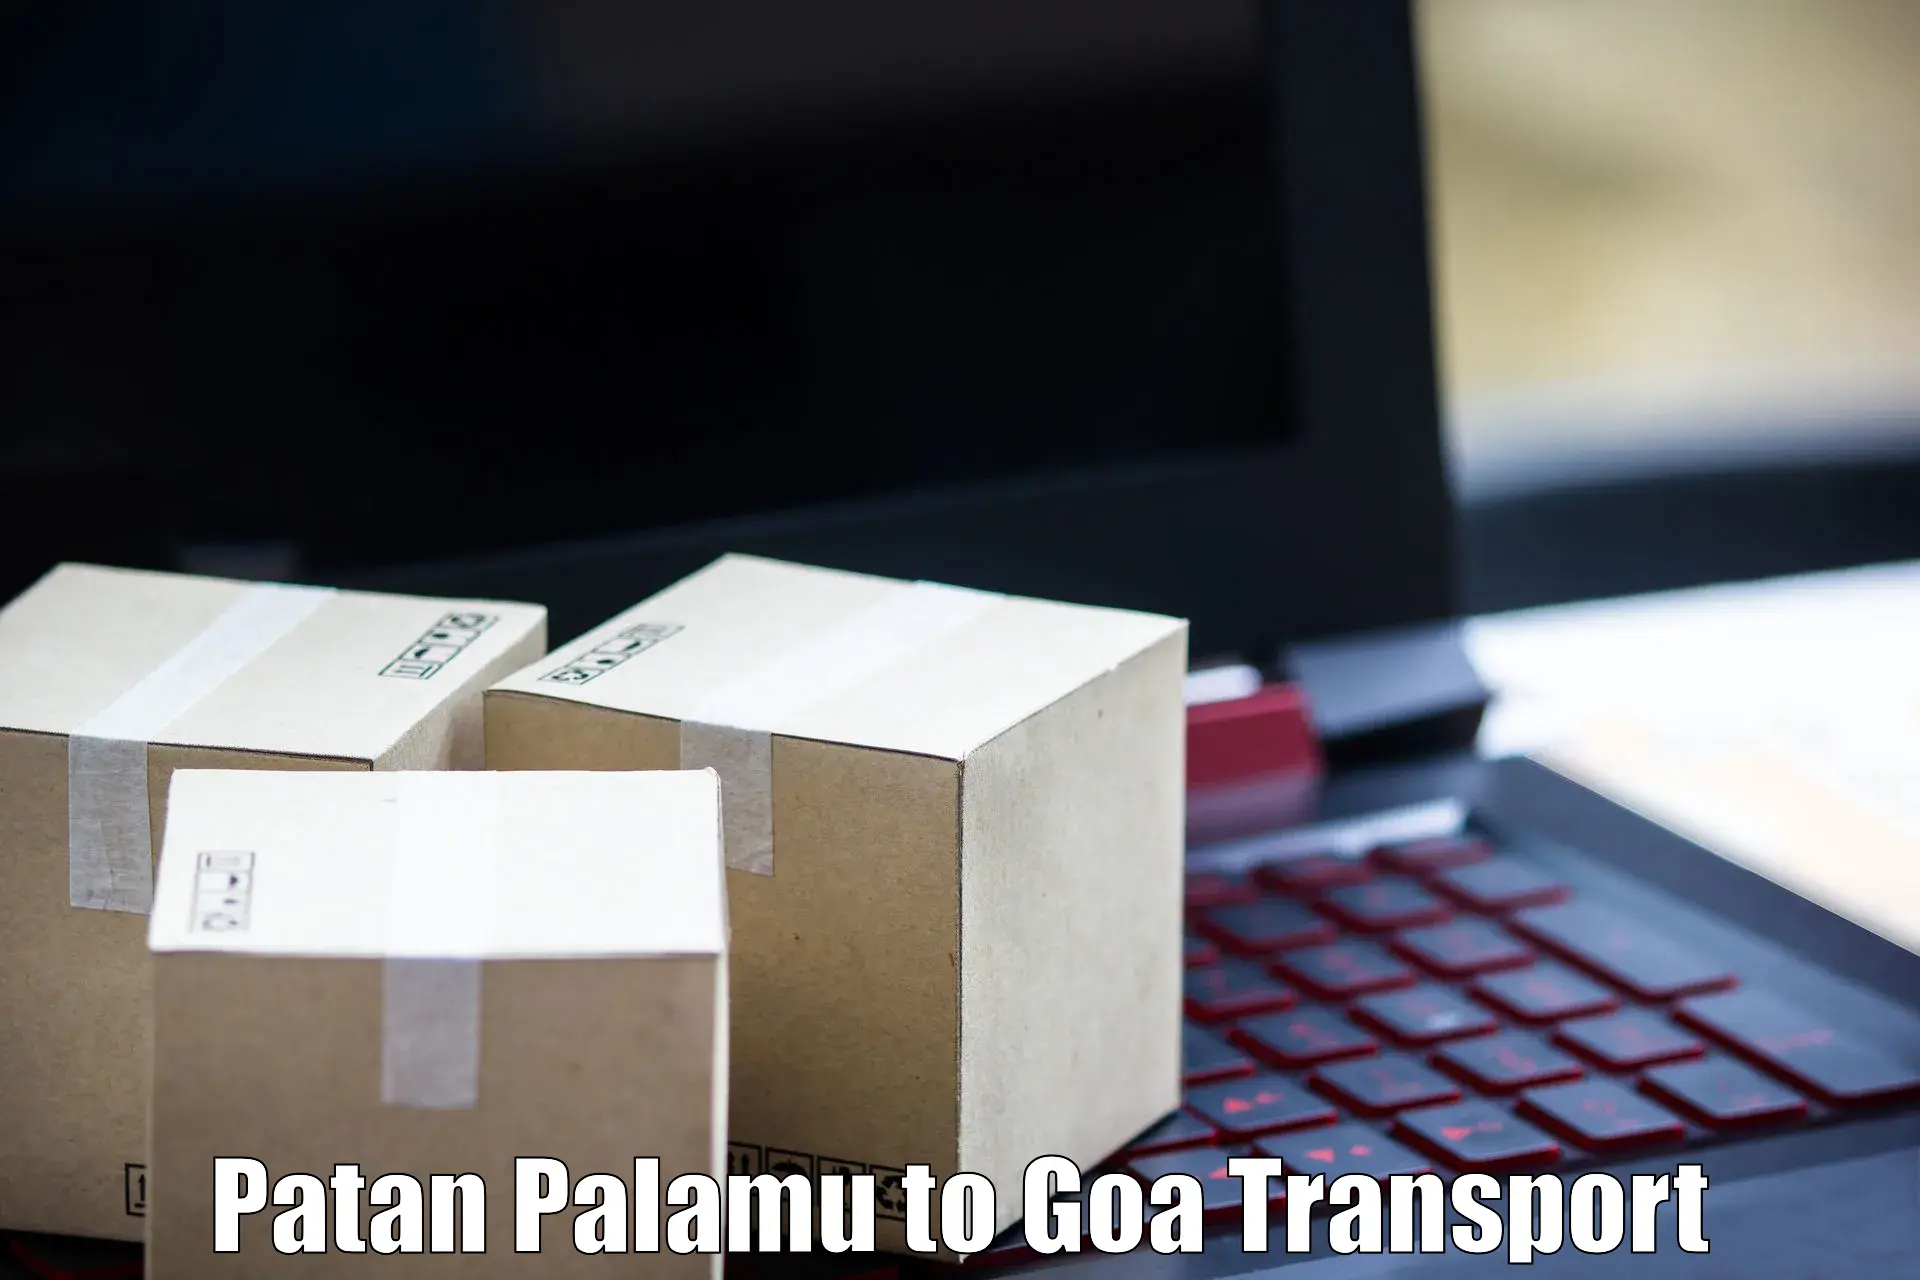 Nearest transport service Patan Palamu to Bicholim